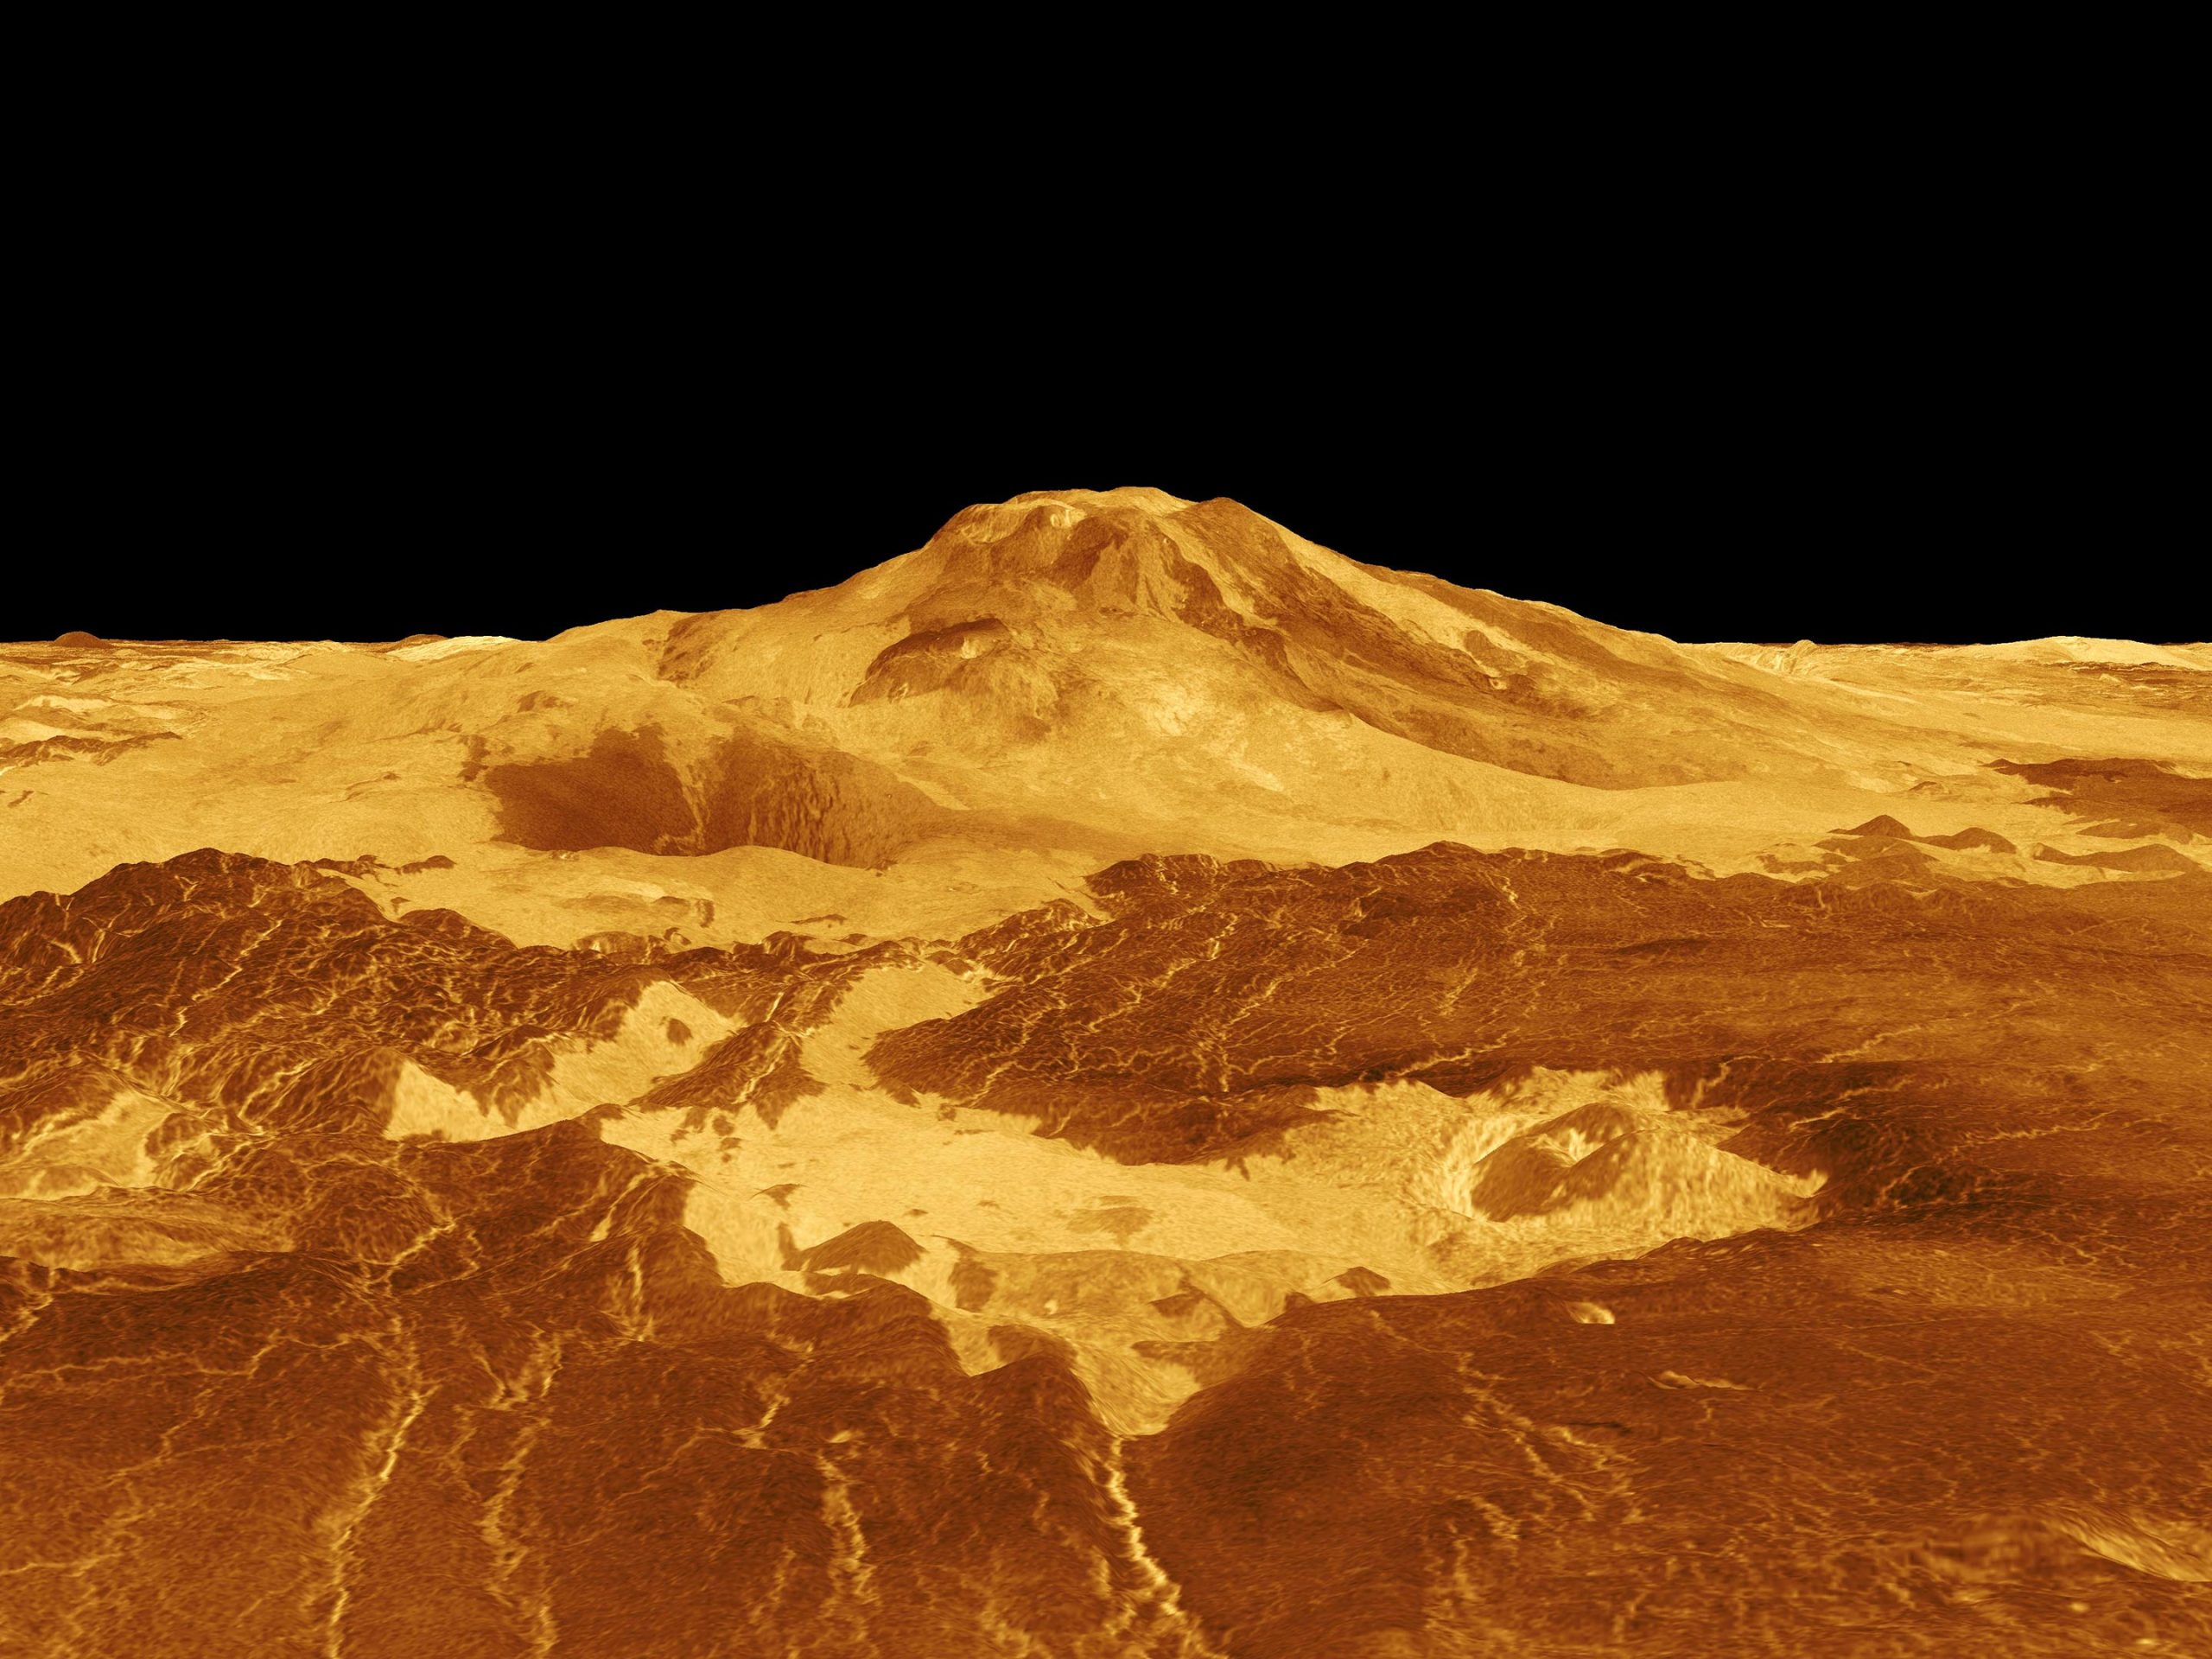 ונוס מתפרץ: פעילות געשית טריה נחשפה בנתוני מגלן של נאס"א